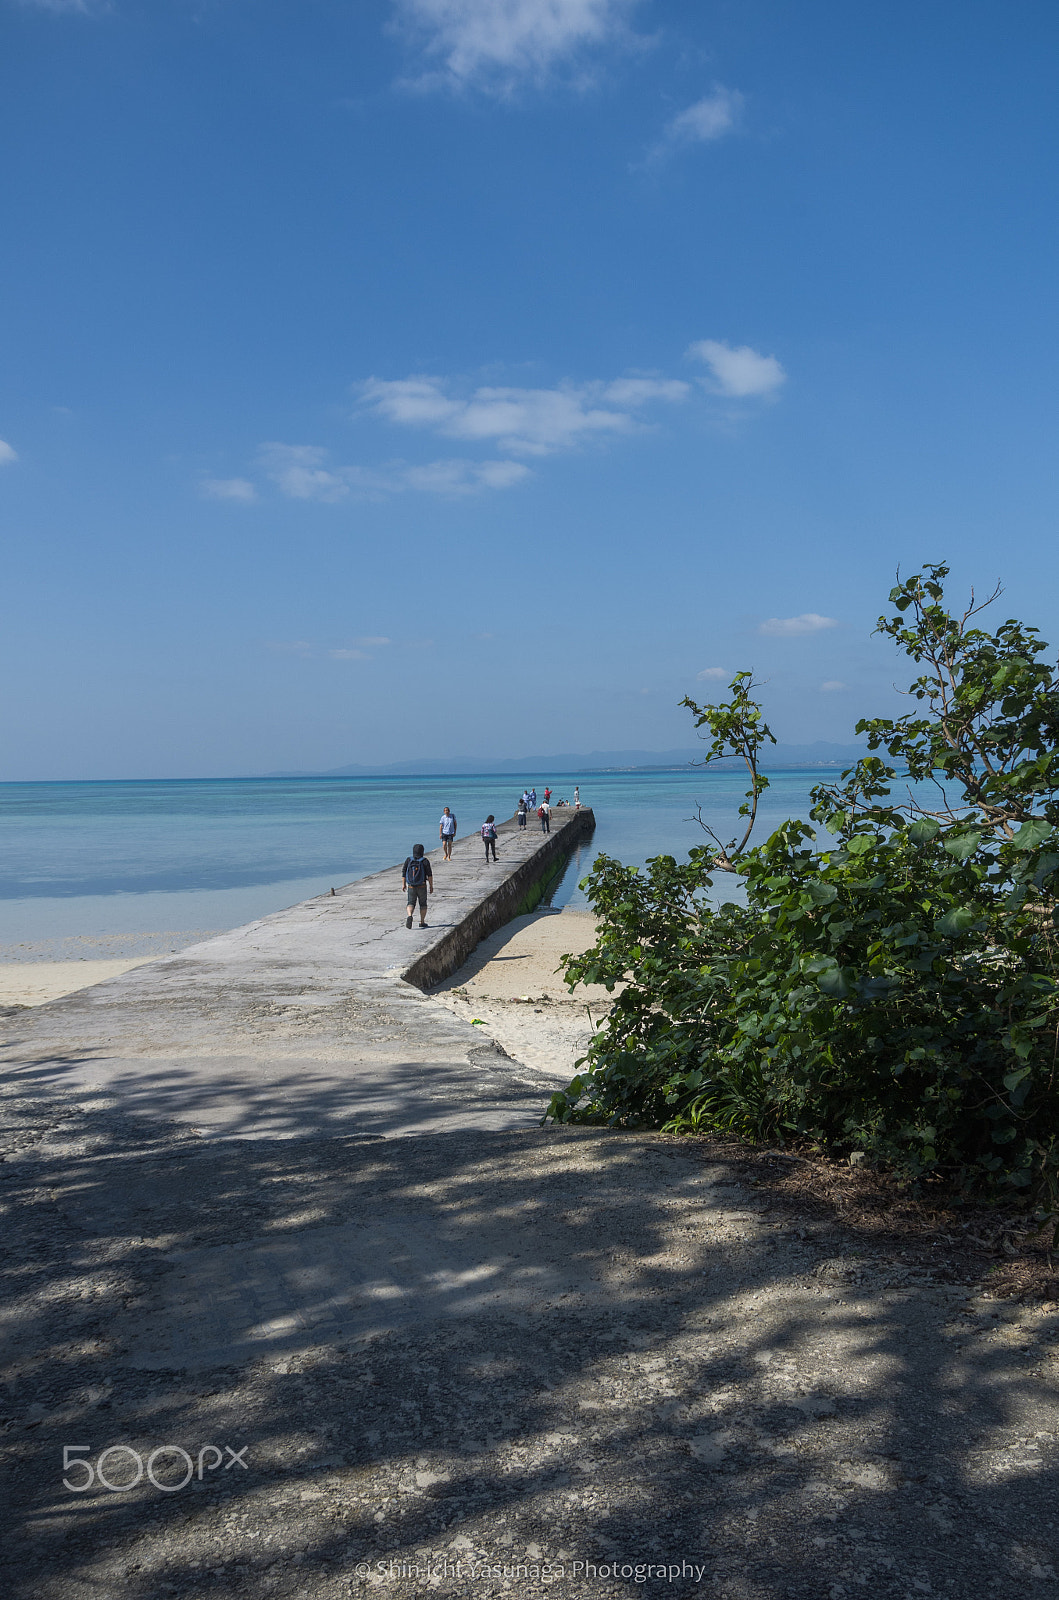 Pentax K-30 sample photo. Nishi-sambashi (west pier) in taketomi island okin photography